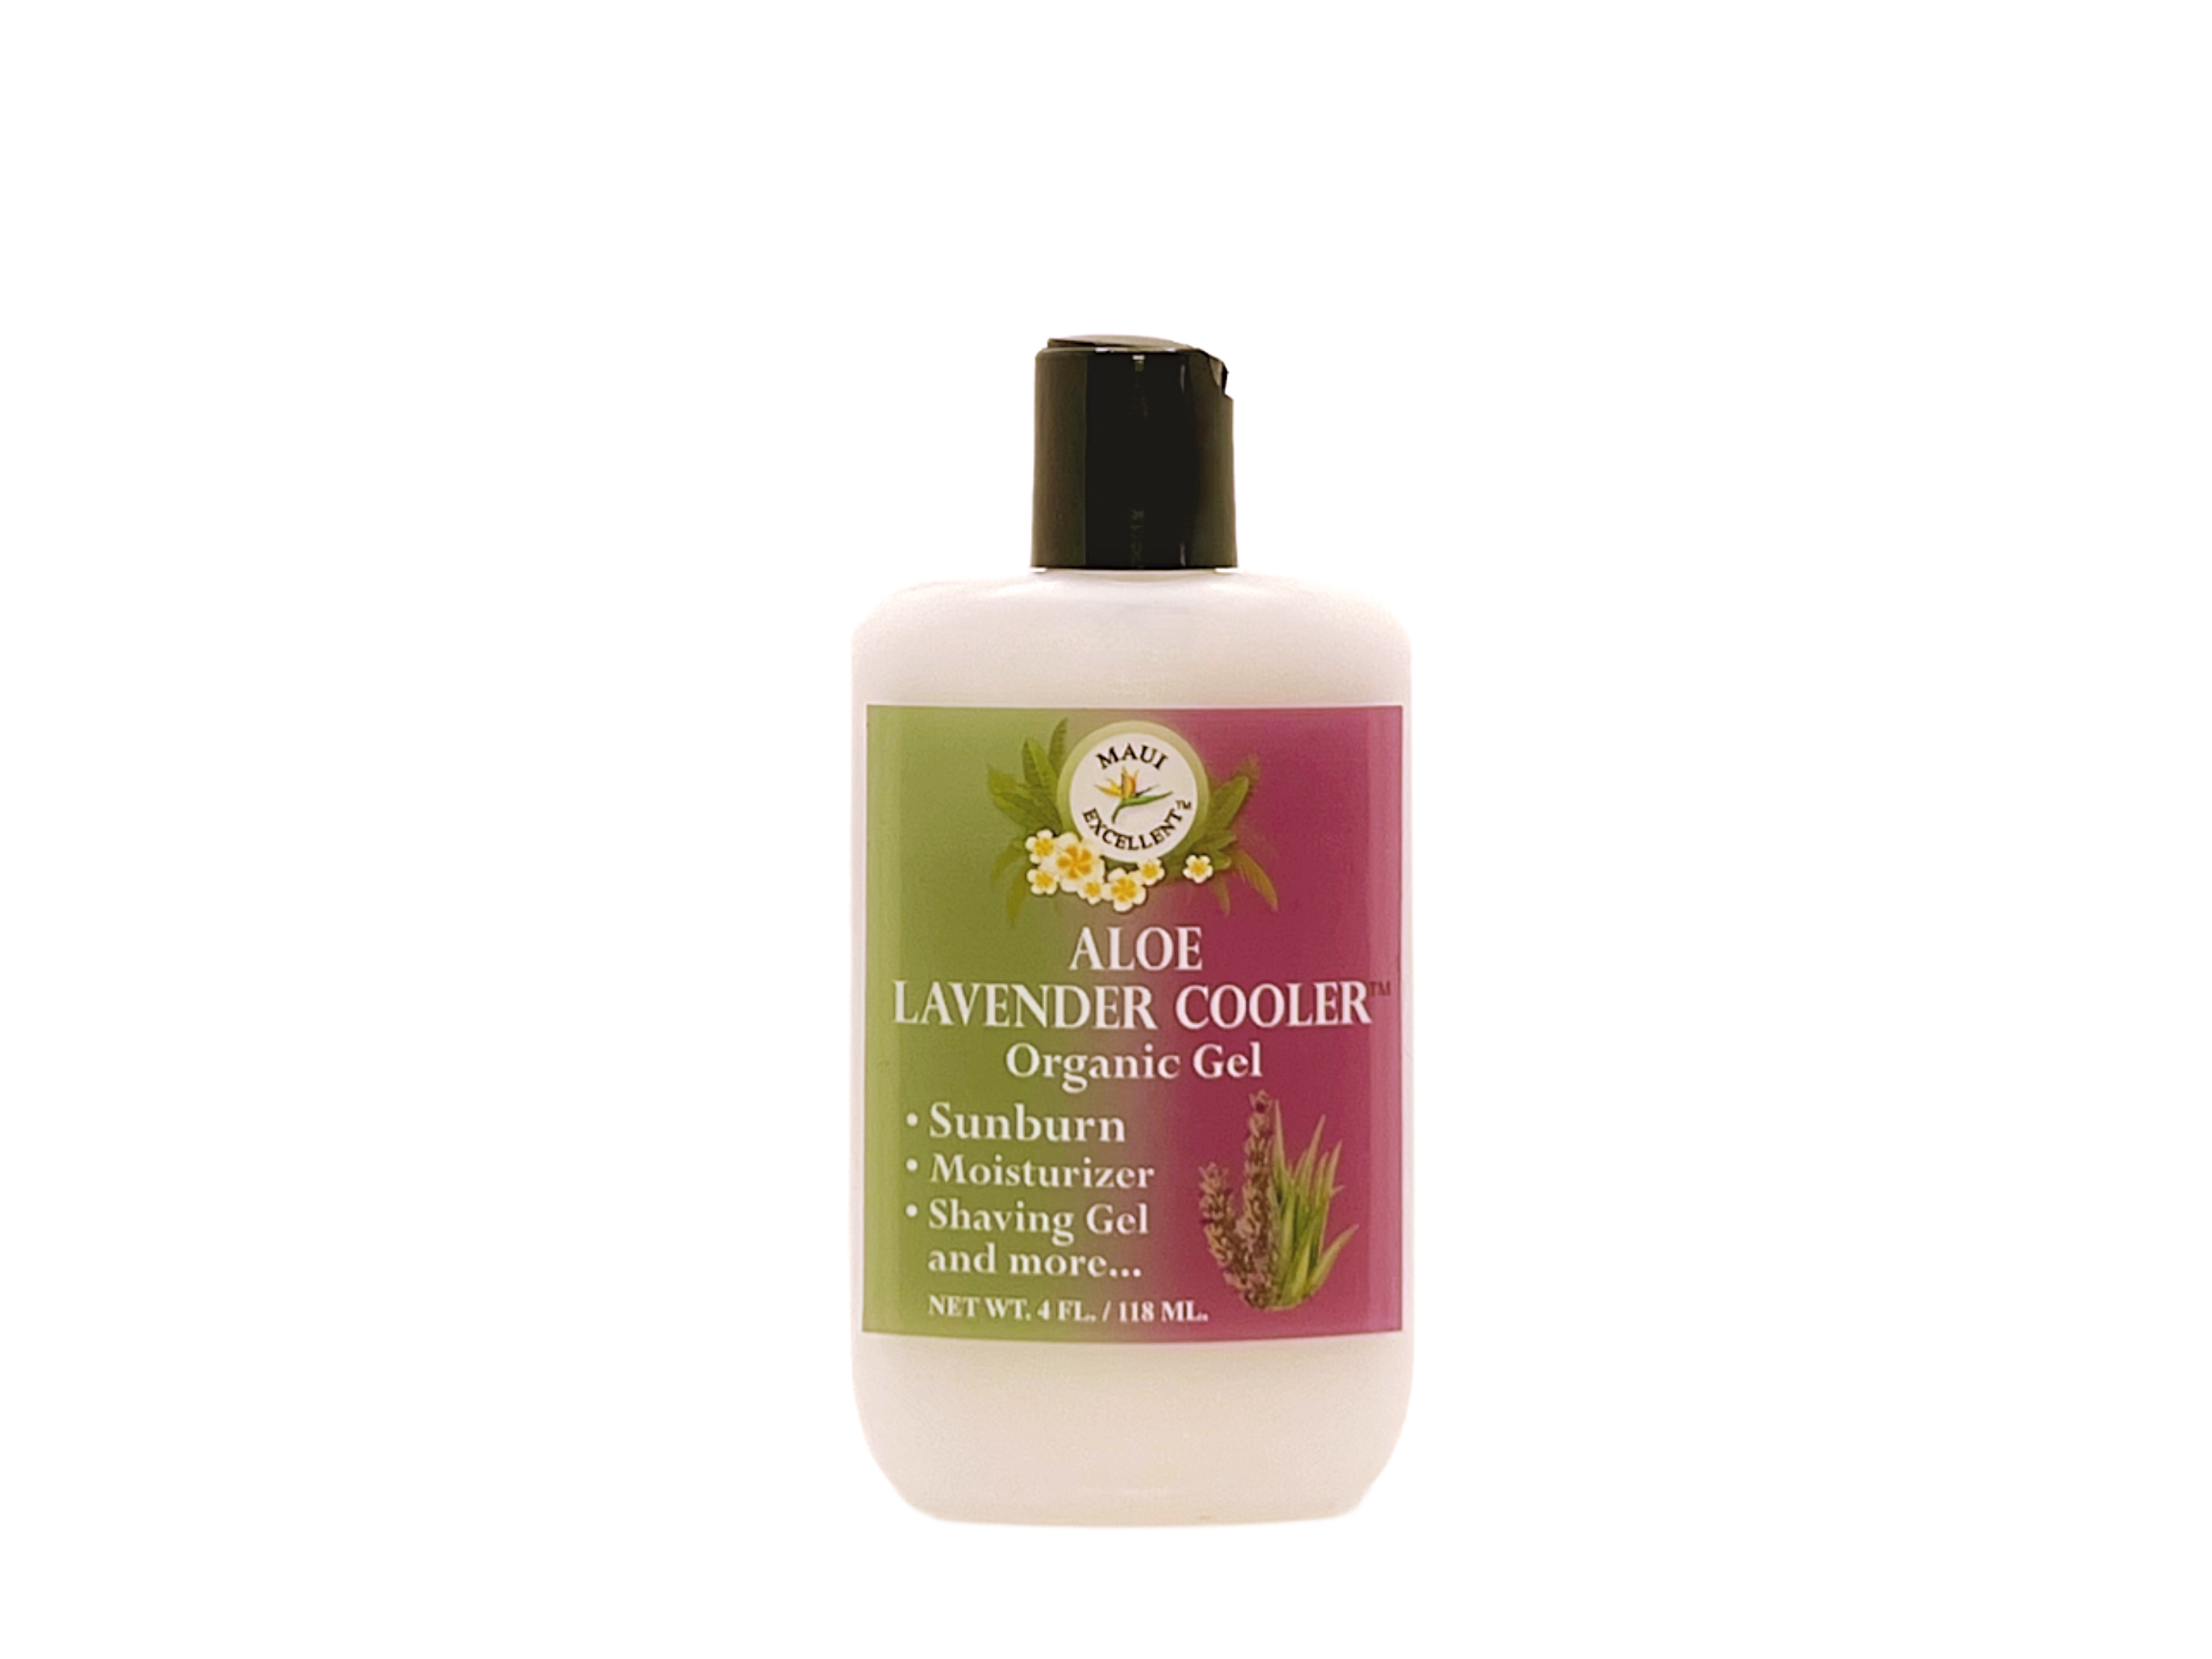 Maui Excellent Aloe Lavender Cooler Organic Gel, 4 Ounces